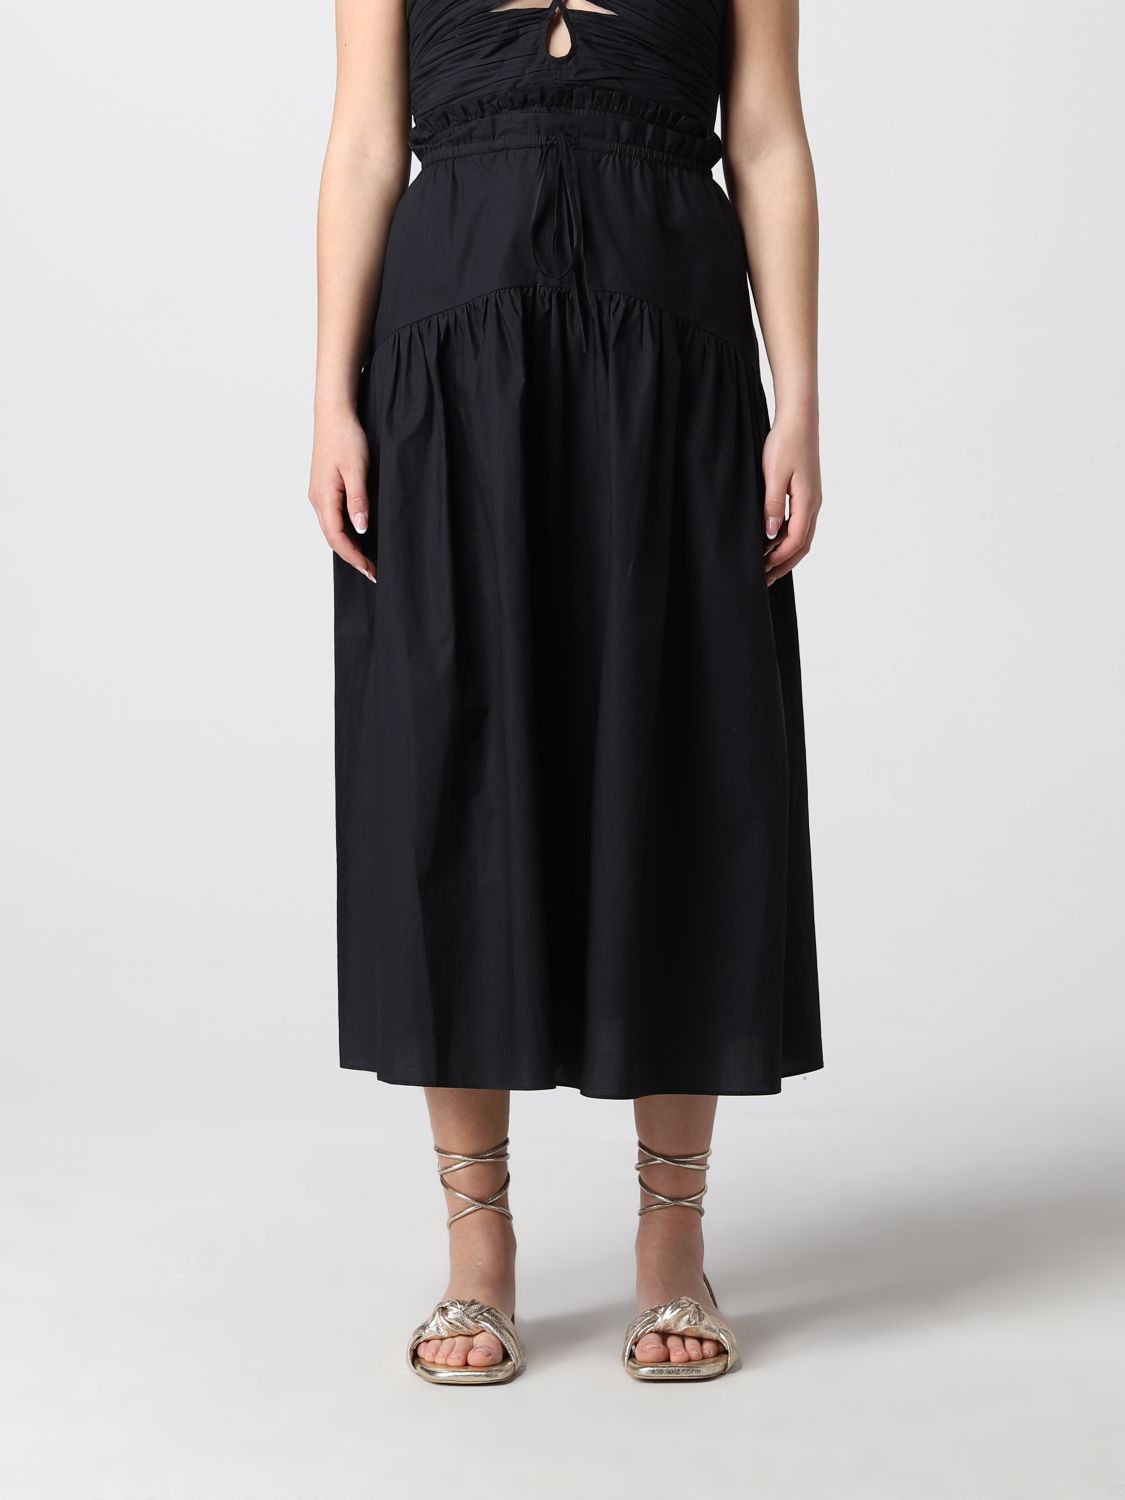 Ulla Johnson Skirt Women In Black | ModeSens